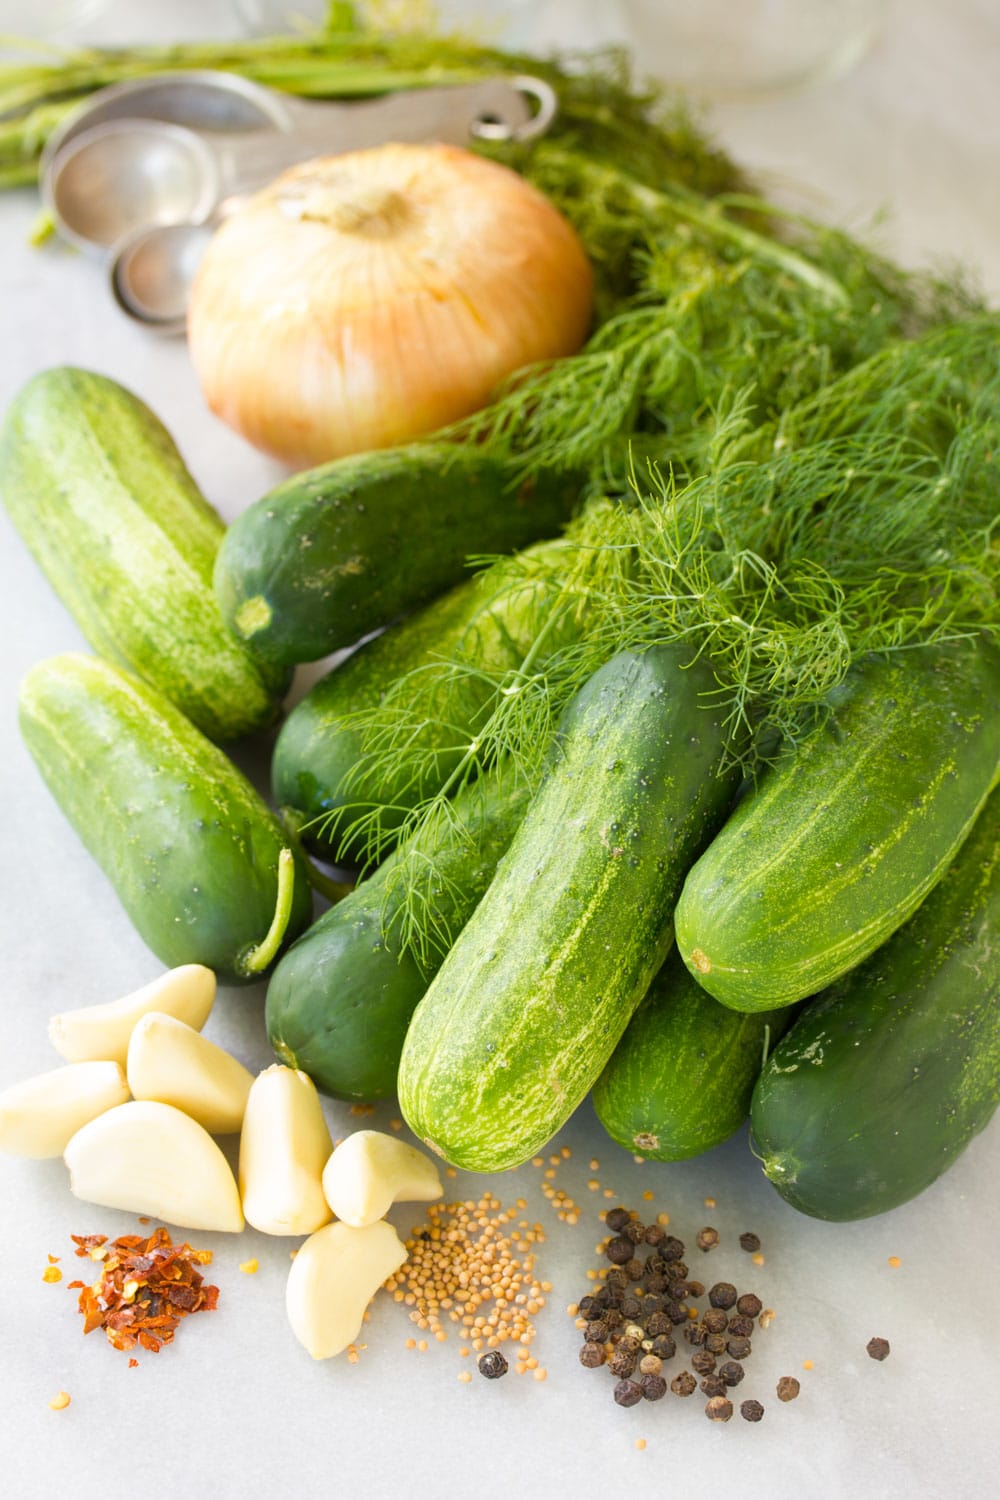 How to Make Pickles #ASpicyPerspective #Pickles #RefrigeratorPickles #HomemadePickles #PickleRecipe #HowtoMakePickles